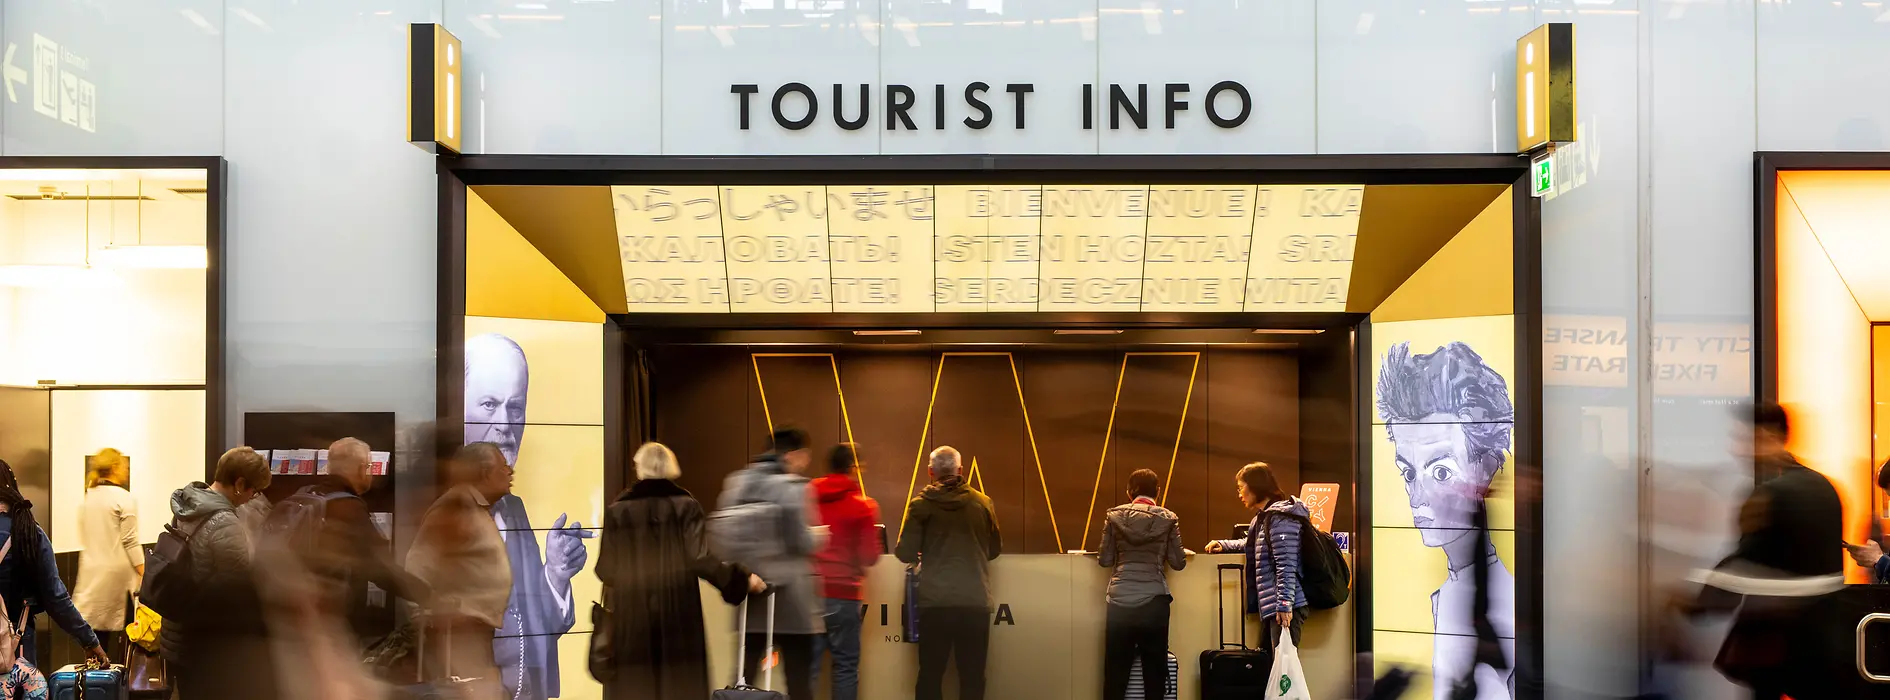 Tourist-Info, Welcome Point à l'aéroport de Vienne, voyageurs